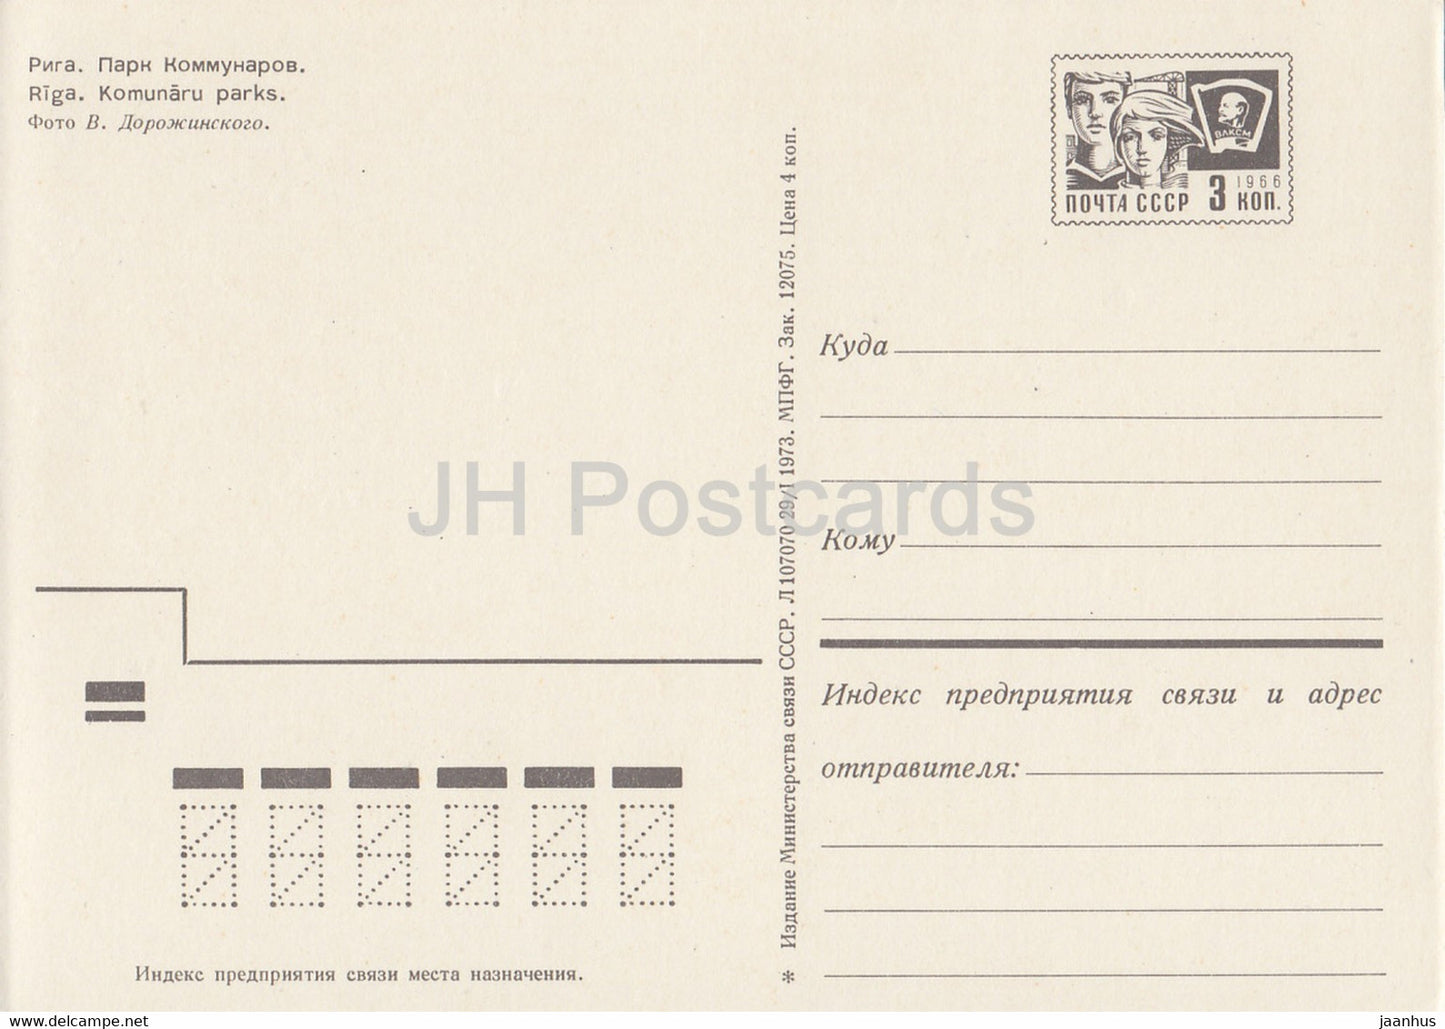 Riga - Communards Park - postal stationery - 1973 - Latvia USSR - unused